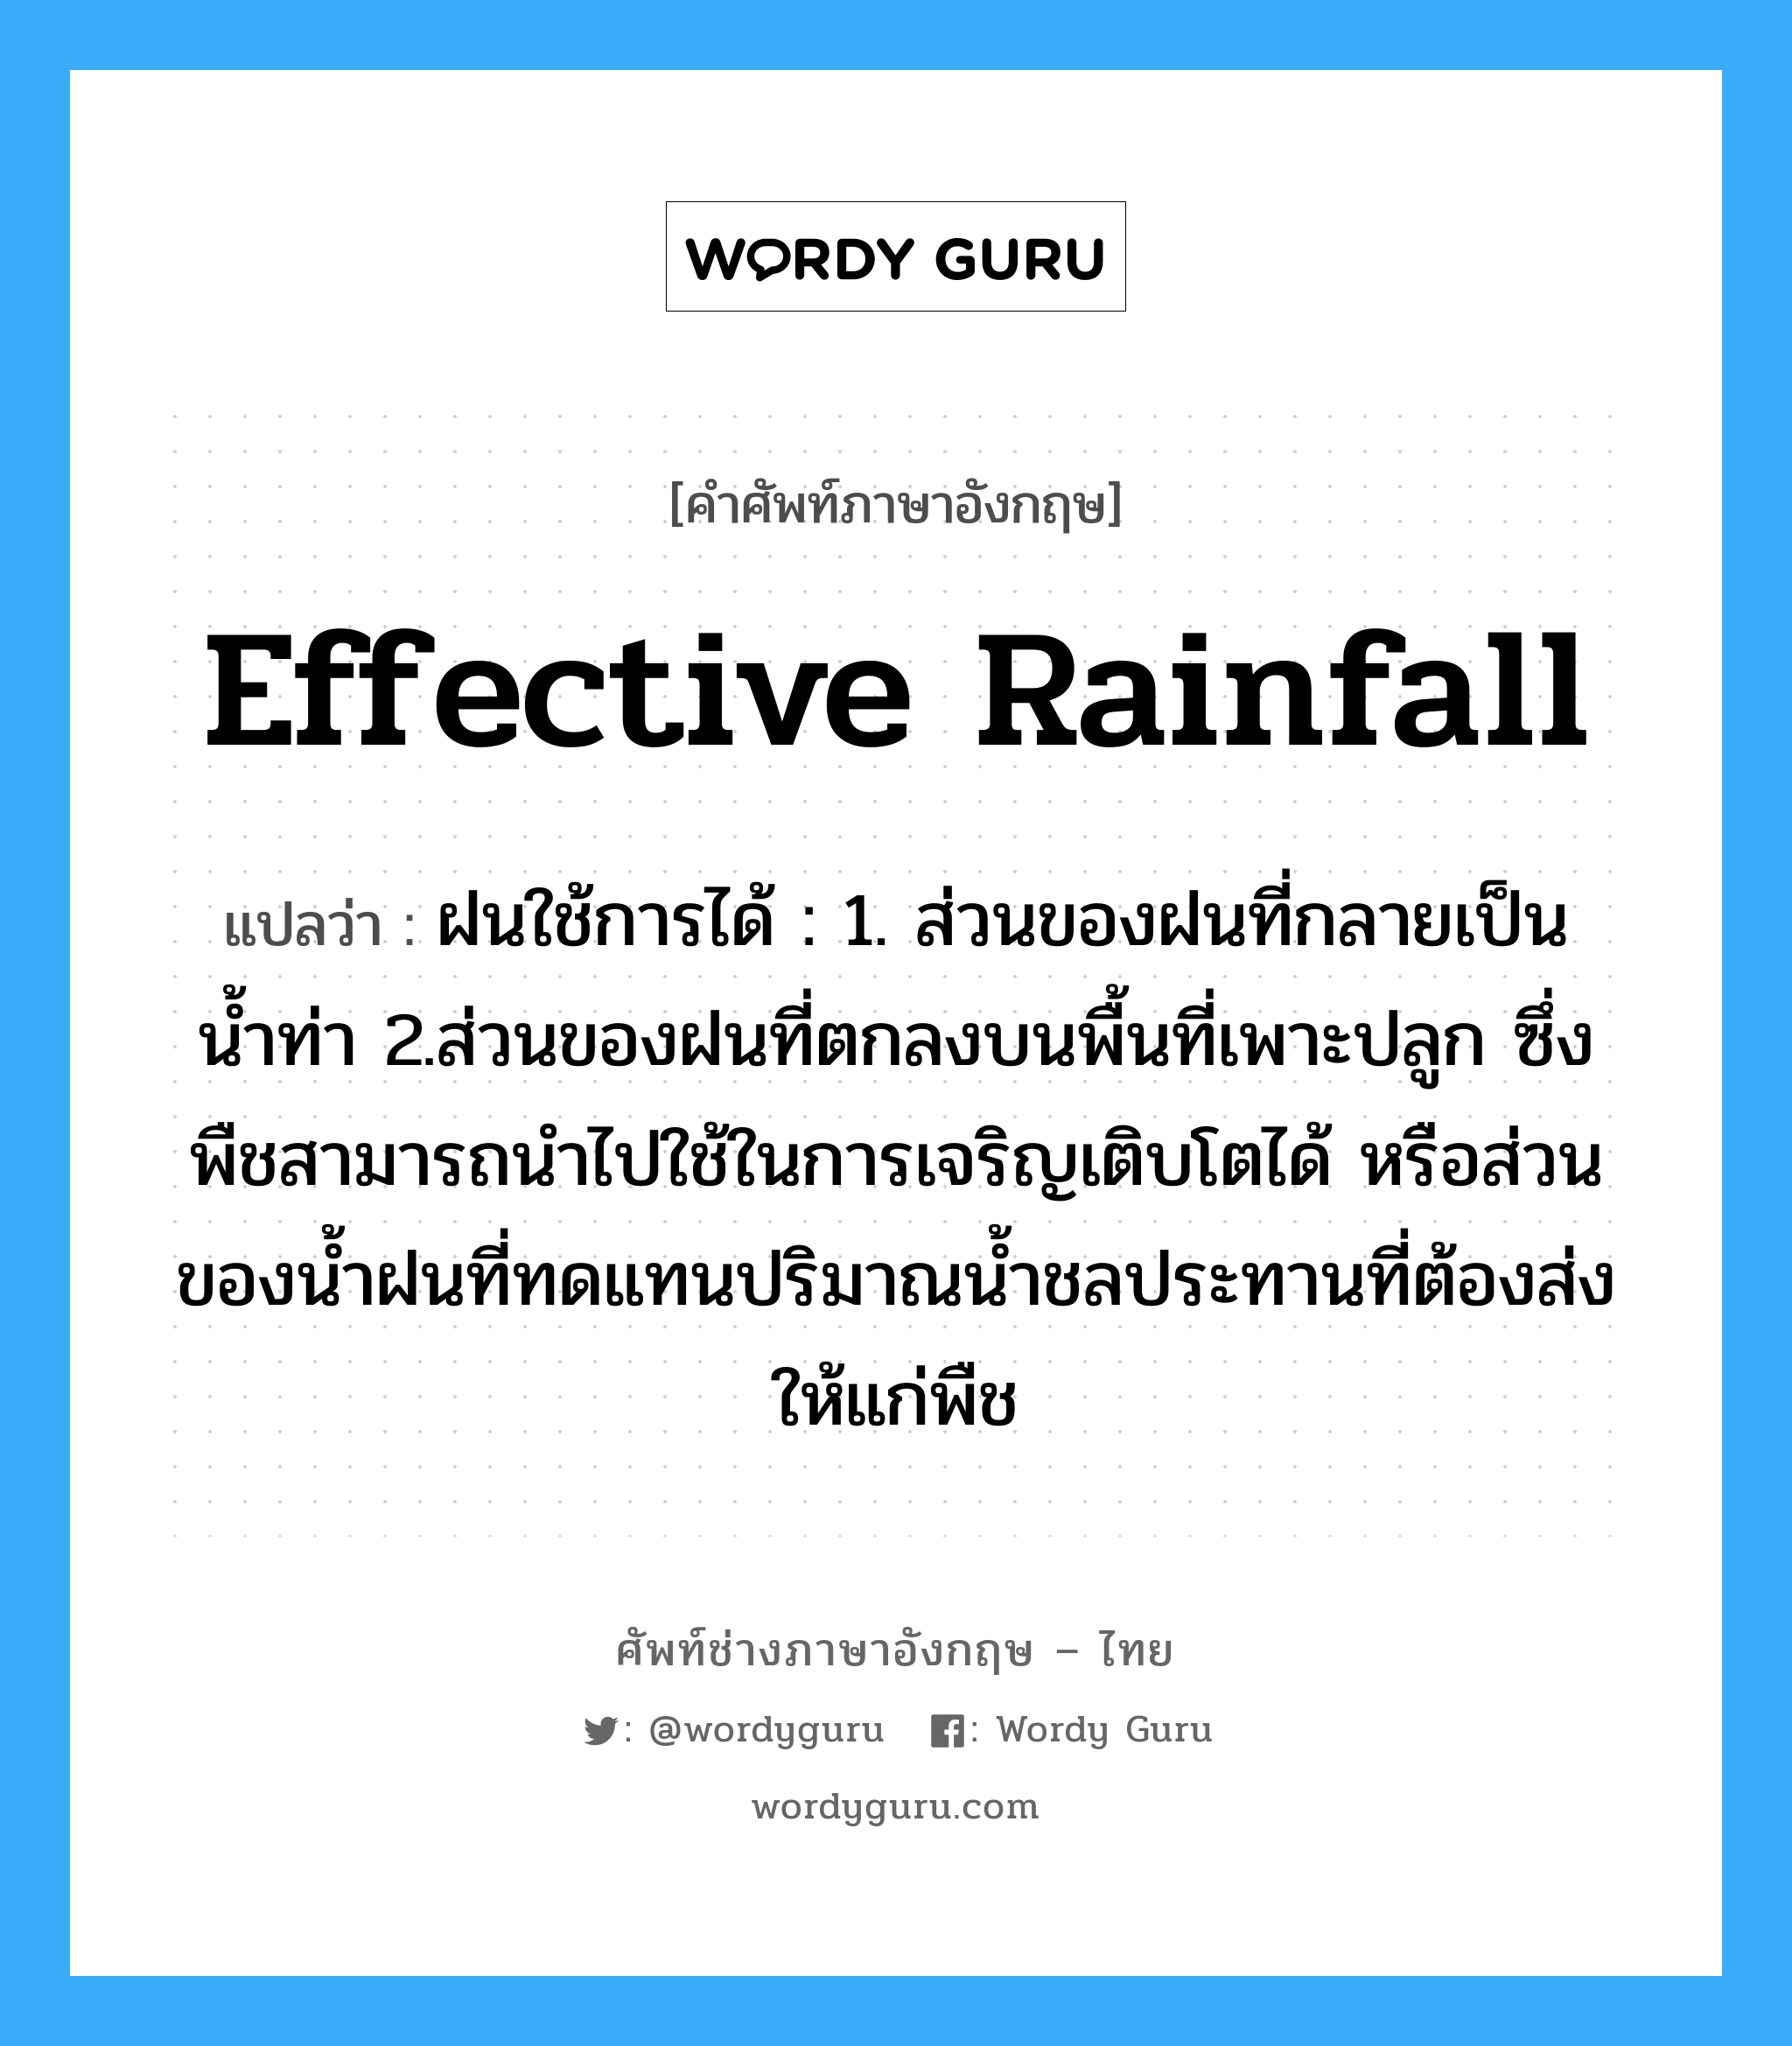 effective rainfall แปลว่า?, คำศัพท์ช่างภาษาอังกฤษ - ไทย effective rainfall คำศัพท์ภาษาอังกฤษ effective rainfall แปลว่า ฝนใช้การได้ : 1. ส่วนของฝนที่กลายเป็นน้ำท่า 2.ส่วนของฝนที่ตกลงบนพื้นที่เพาะปลูก ซึ่งพืชสามารถนำไปใช้ในการเจริญเติบโตได้ หรือส่วนของน้ำฝนที่ทดแทนปริมาณน้ำชลประทานที่ต้องส่งให้แก่พืช